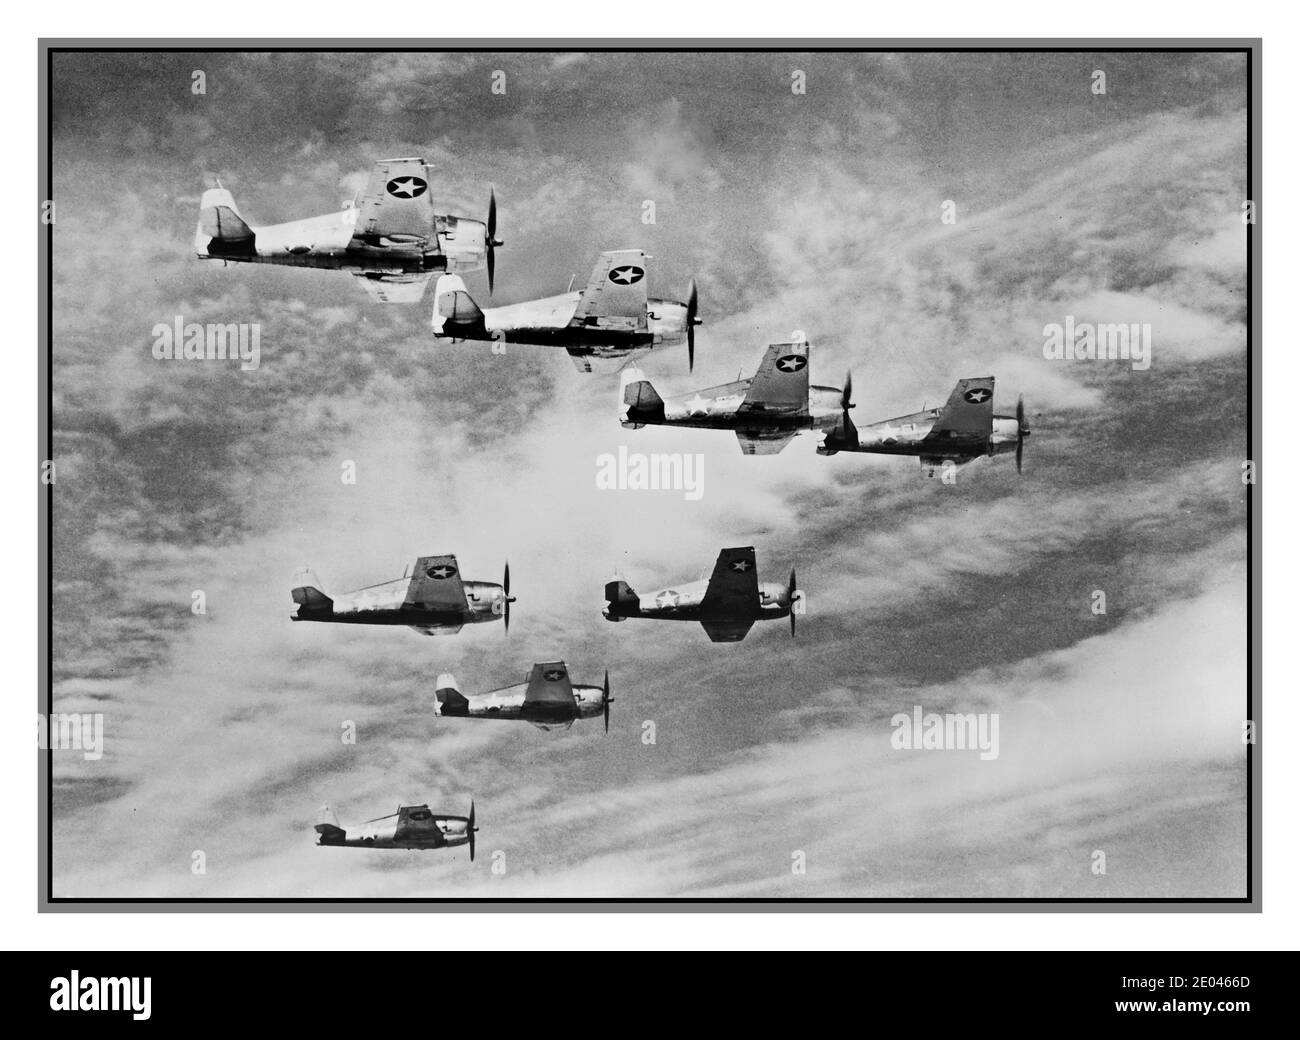 WK2 USA Propaganda Luftbild mit dem Titel "etwas, das oben schneller gehen wird" Luftaufnahme von acht Grumman Hellcat Flugzeugen im Flug. 1943. Flugzeuge--Vereinigte Staaten--1940-1950 Weltkrieg, 1939-1945--Ausrüstung und Zubehör--amerikanische Luftaufnahmen Zweiten Weltkrieg Stockfoto